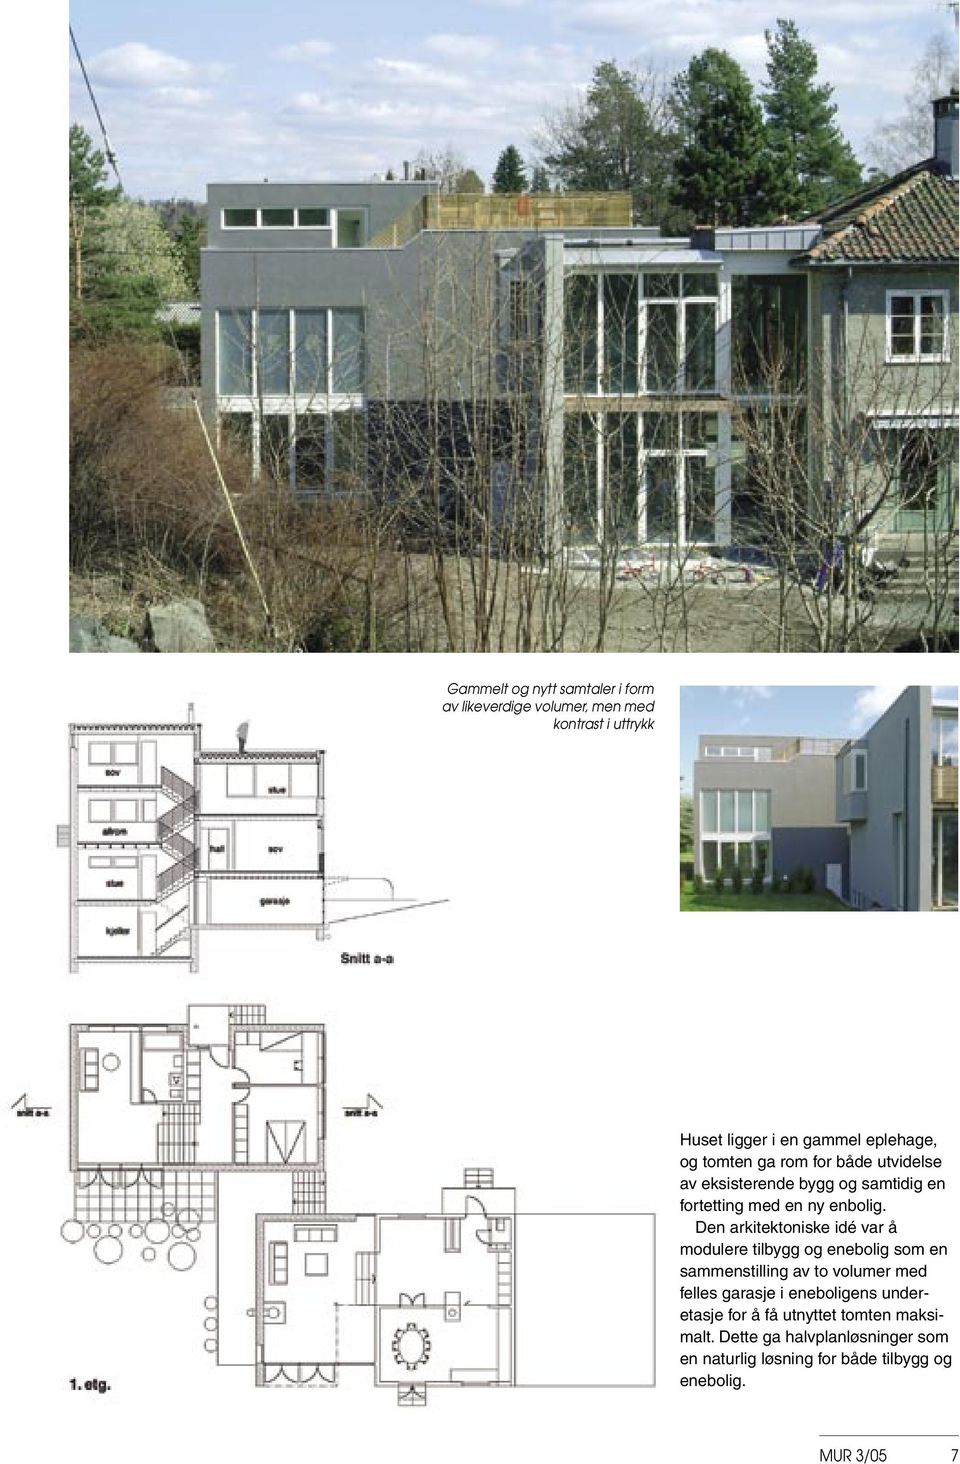 Den arkitektoniske idé var å modulere tilbygg og enebolig som en sammenstilling av to volumer med felles garasje i